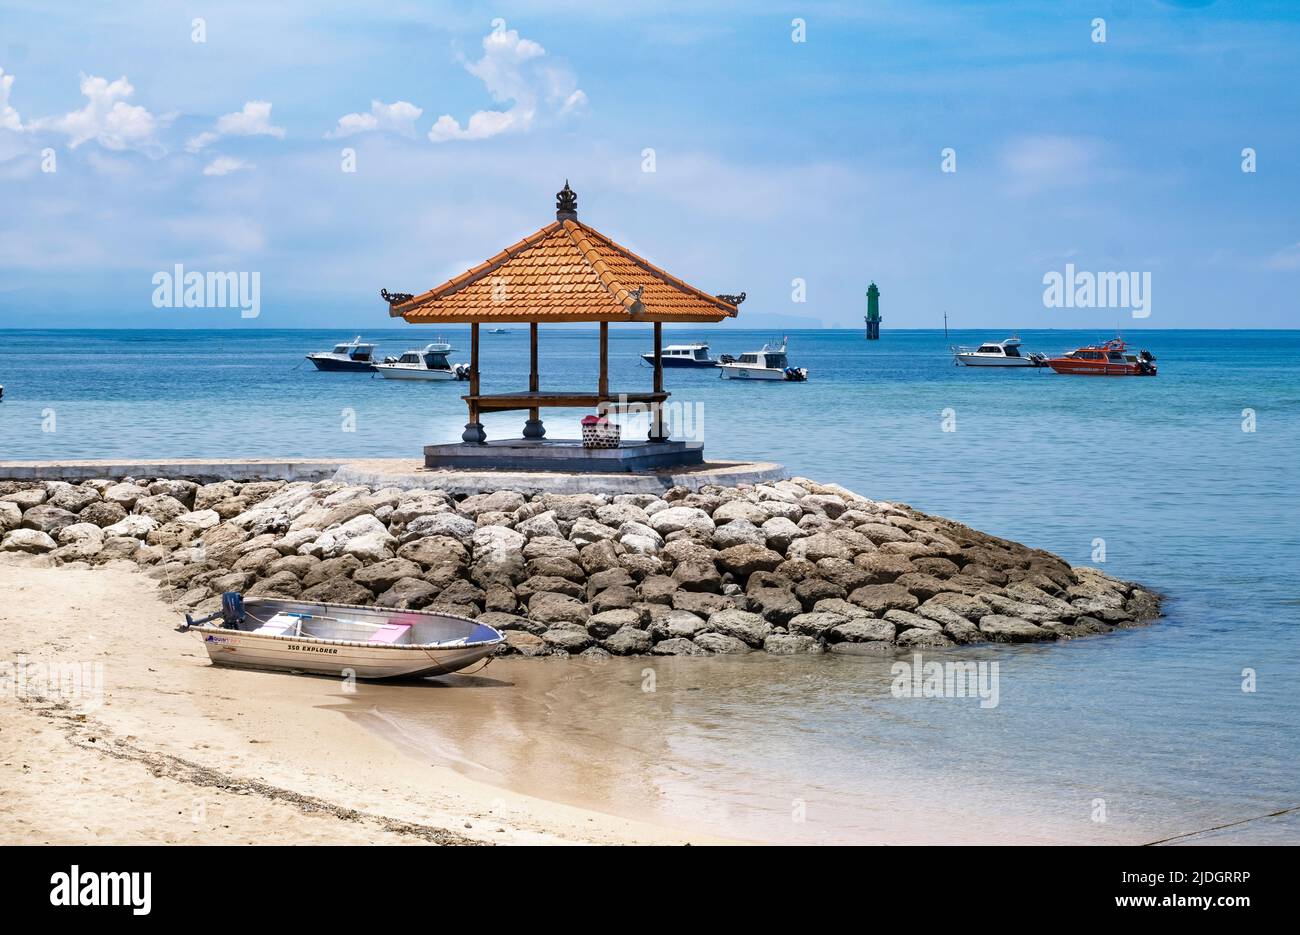 Holzpavillon mit Bambusdach auf Felsen getty am Rande der Strandküste in Bali, Indonesien, blauem Ozean und Booten, die in der Ferne schwimmen Stockfoto